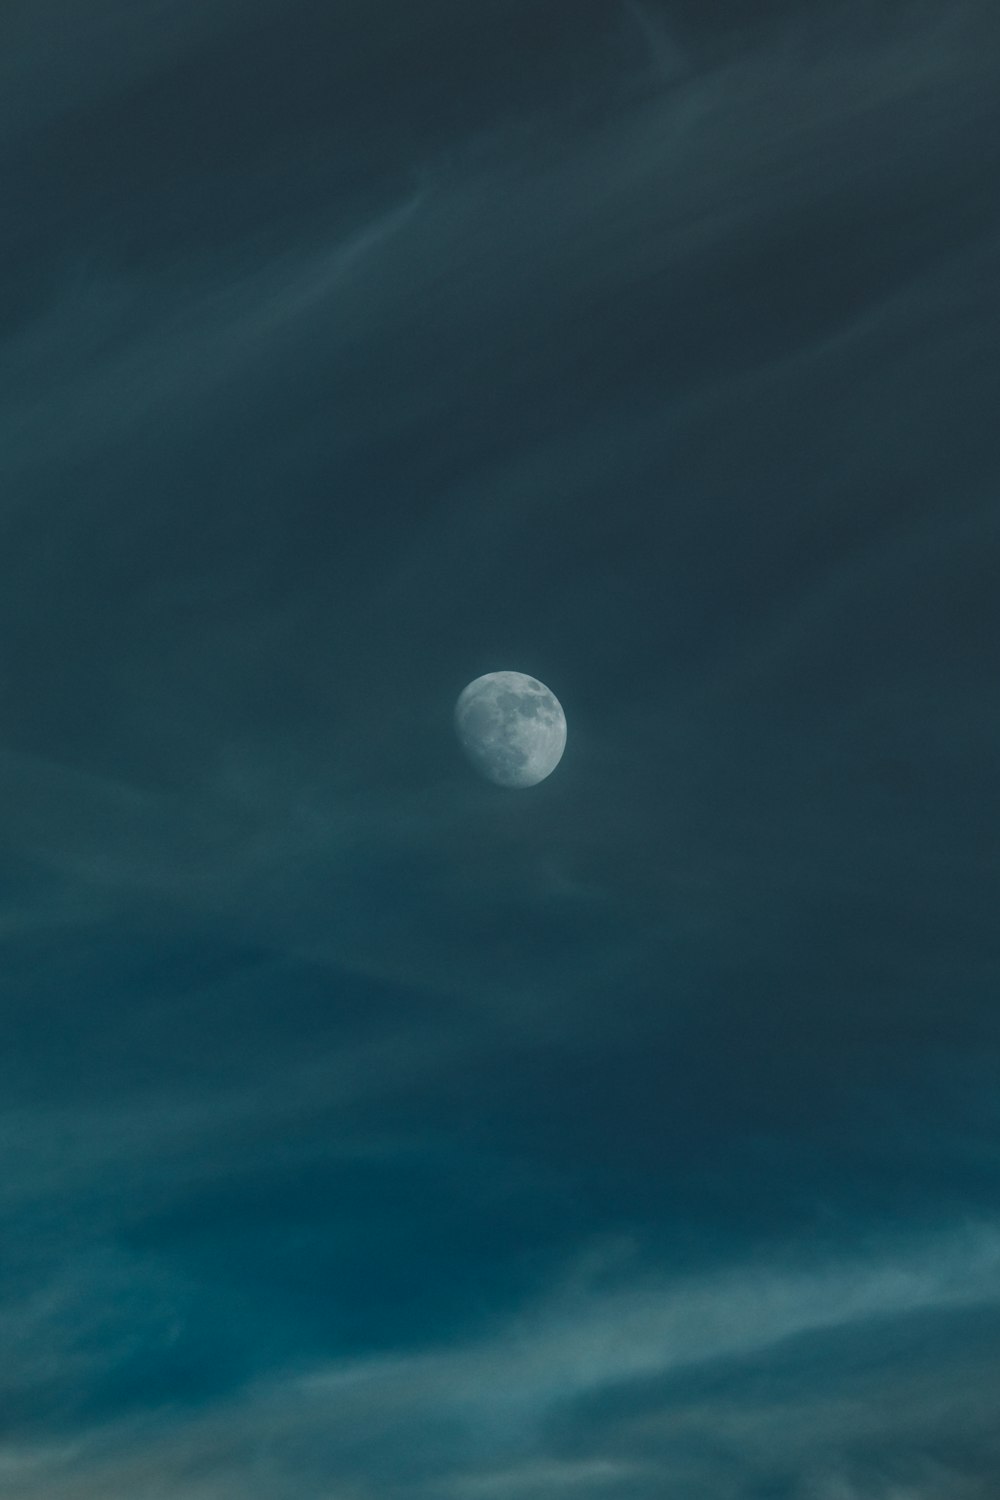 Mond am düsteren Himmel